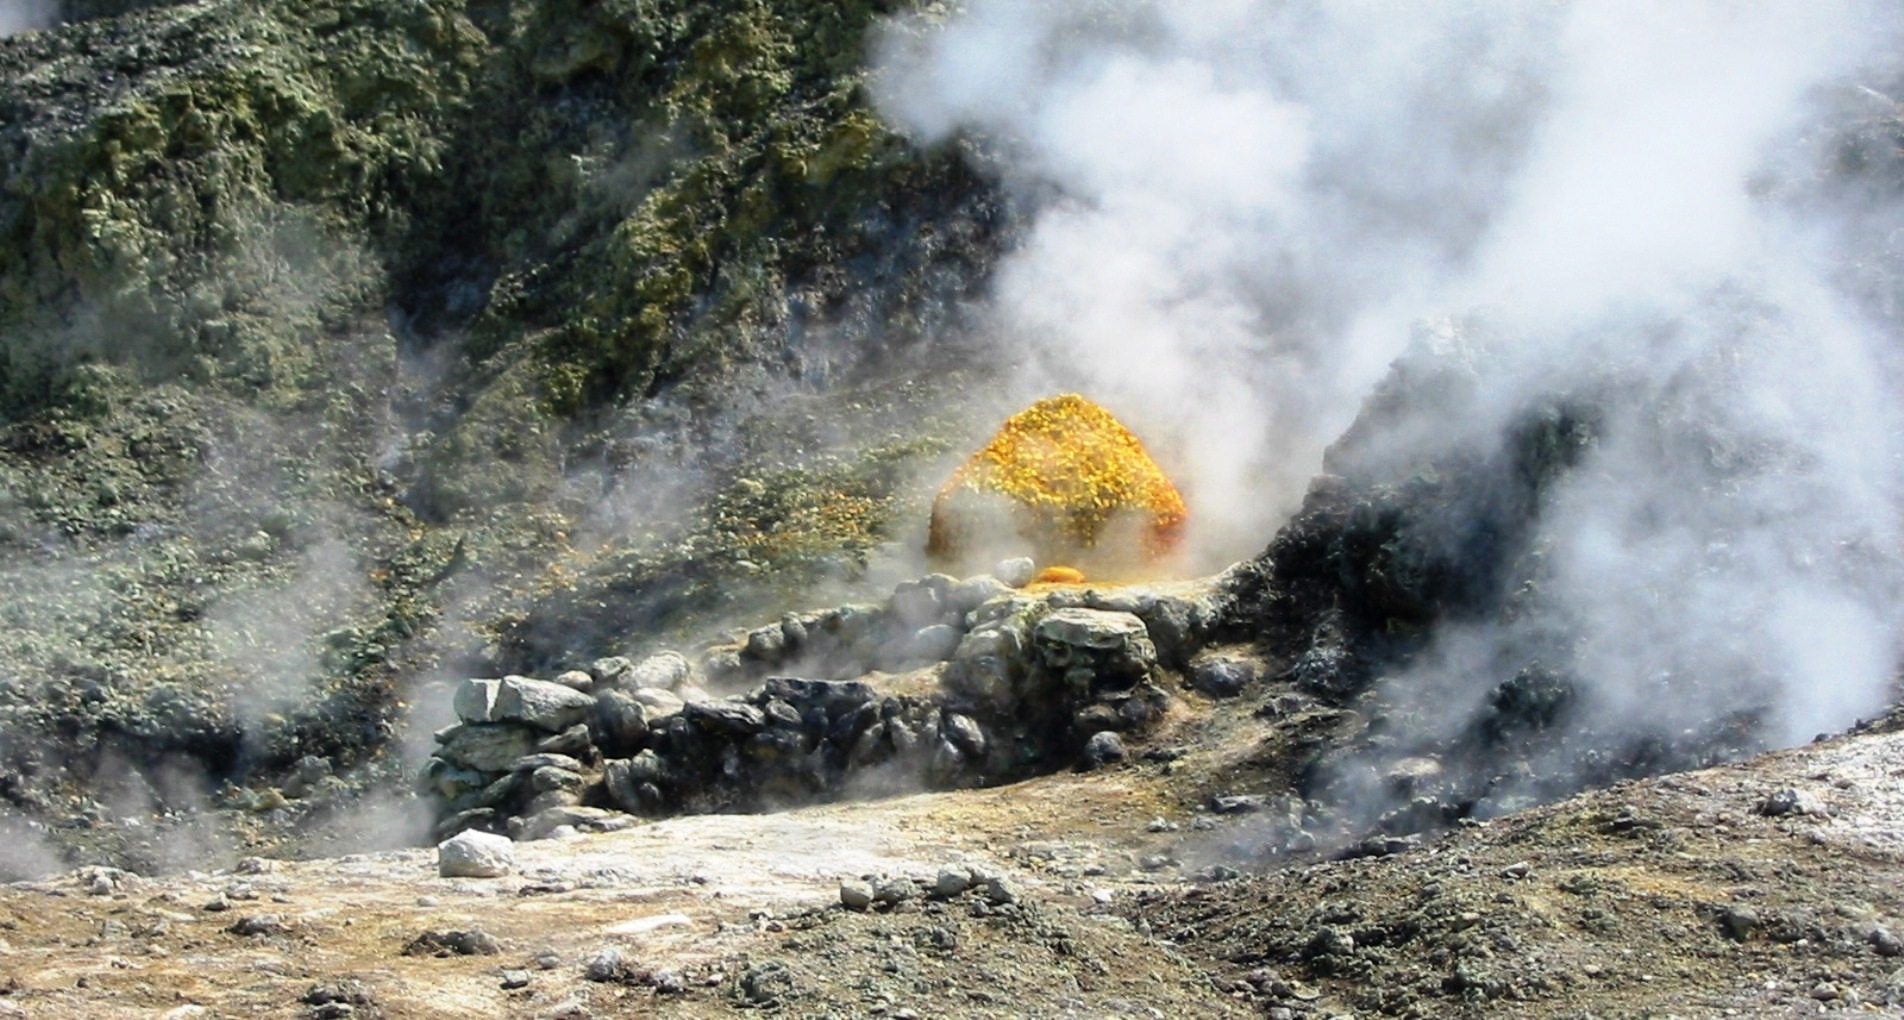 De nombreux phénomènes hydrothermaux, comme la présence de fumerolles et de sources chaudes, traduisent l'origine volcanique des champs phlégréens. © Donar Reiskoffer, Wikimedia common, CC by-sa 3.0